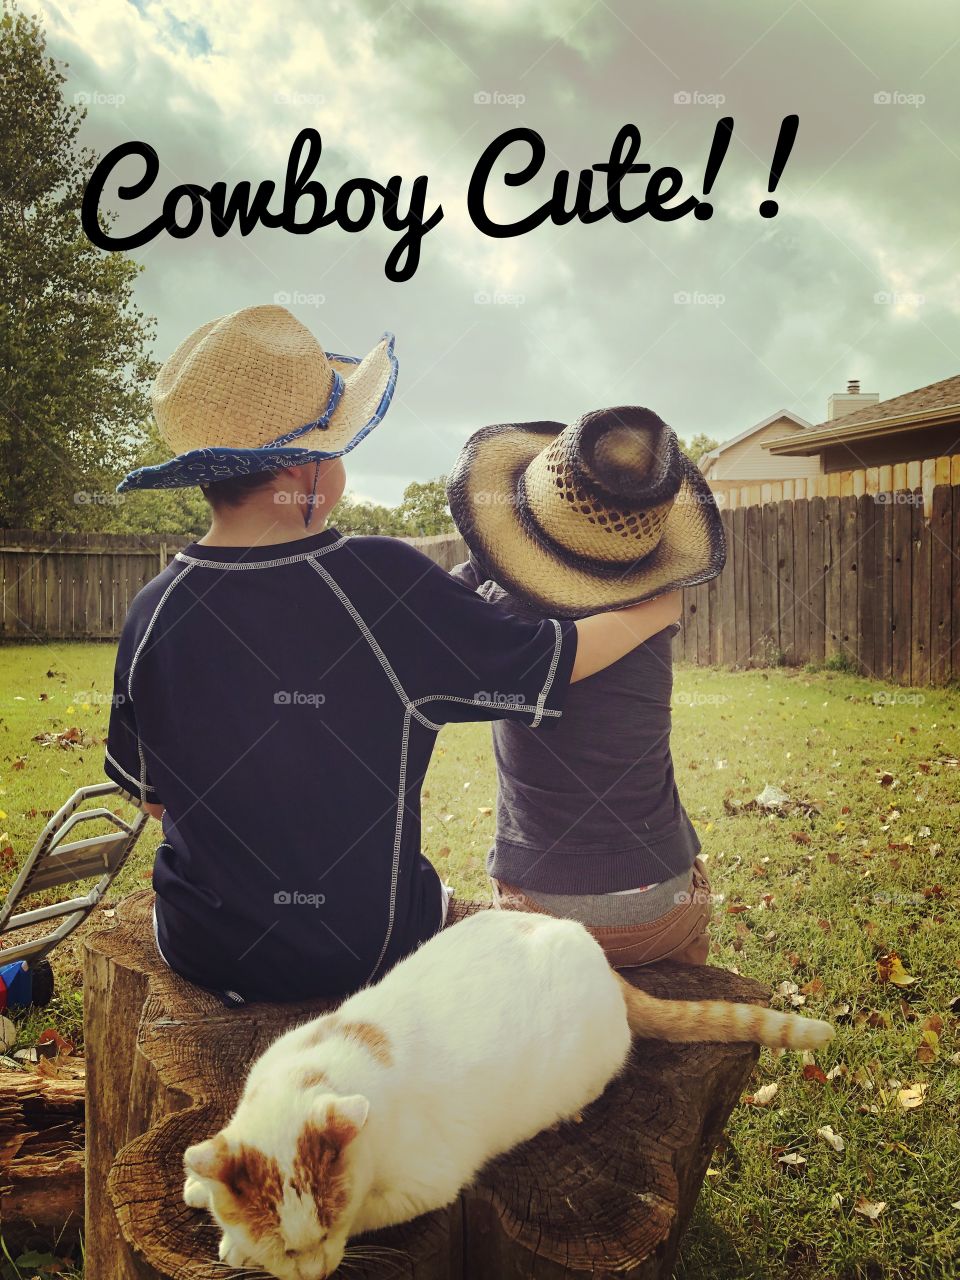 Cowboy cuteness